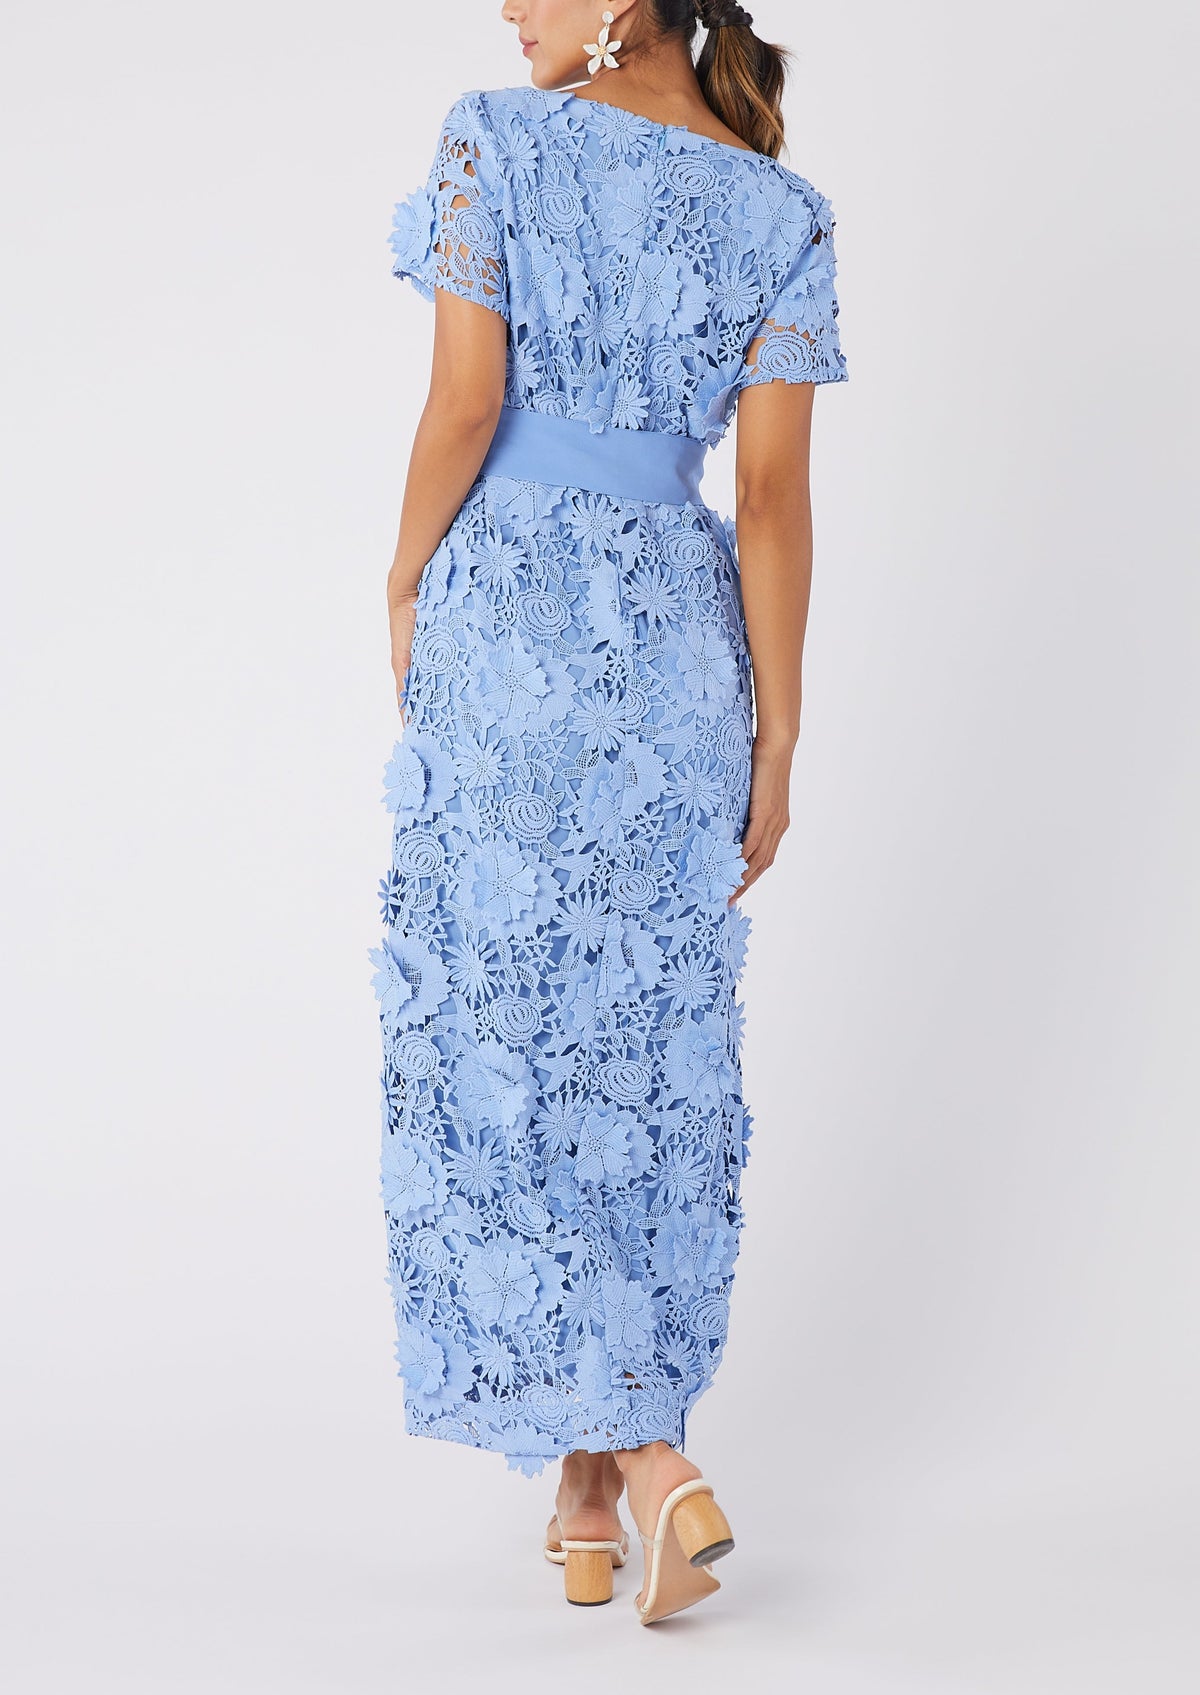 Heidi Caftan Gown in Cornflower Blue 3D Lace